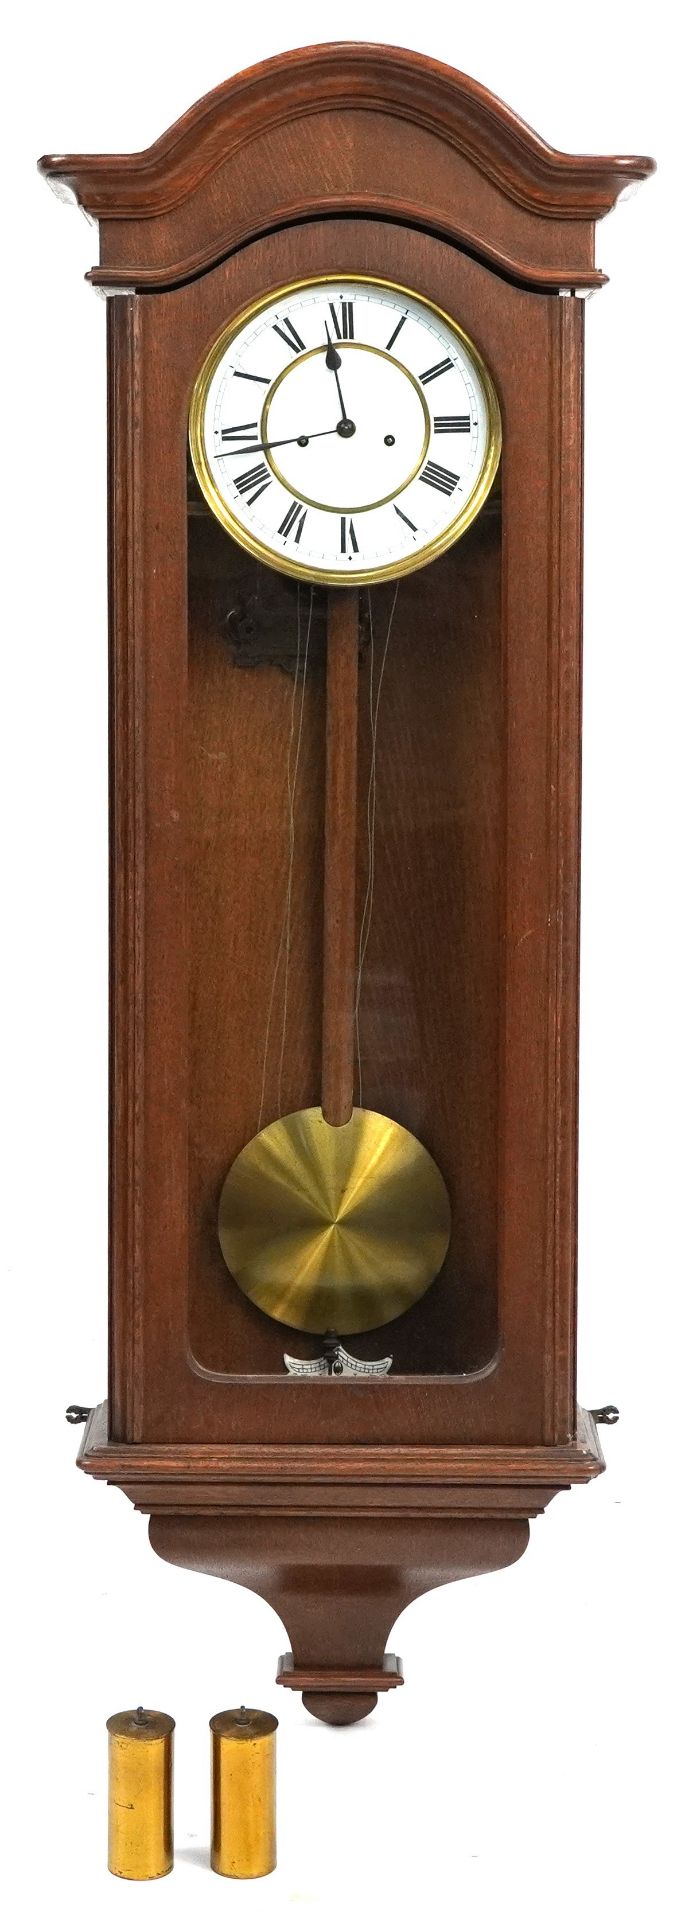 Mahogany cased wall clock, 108cm high